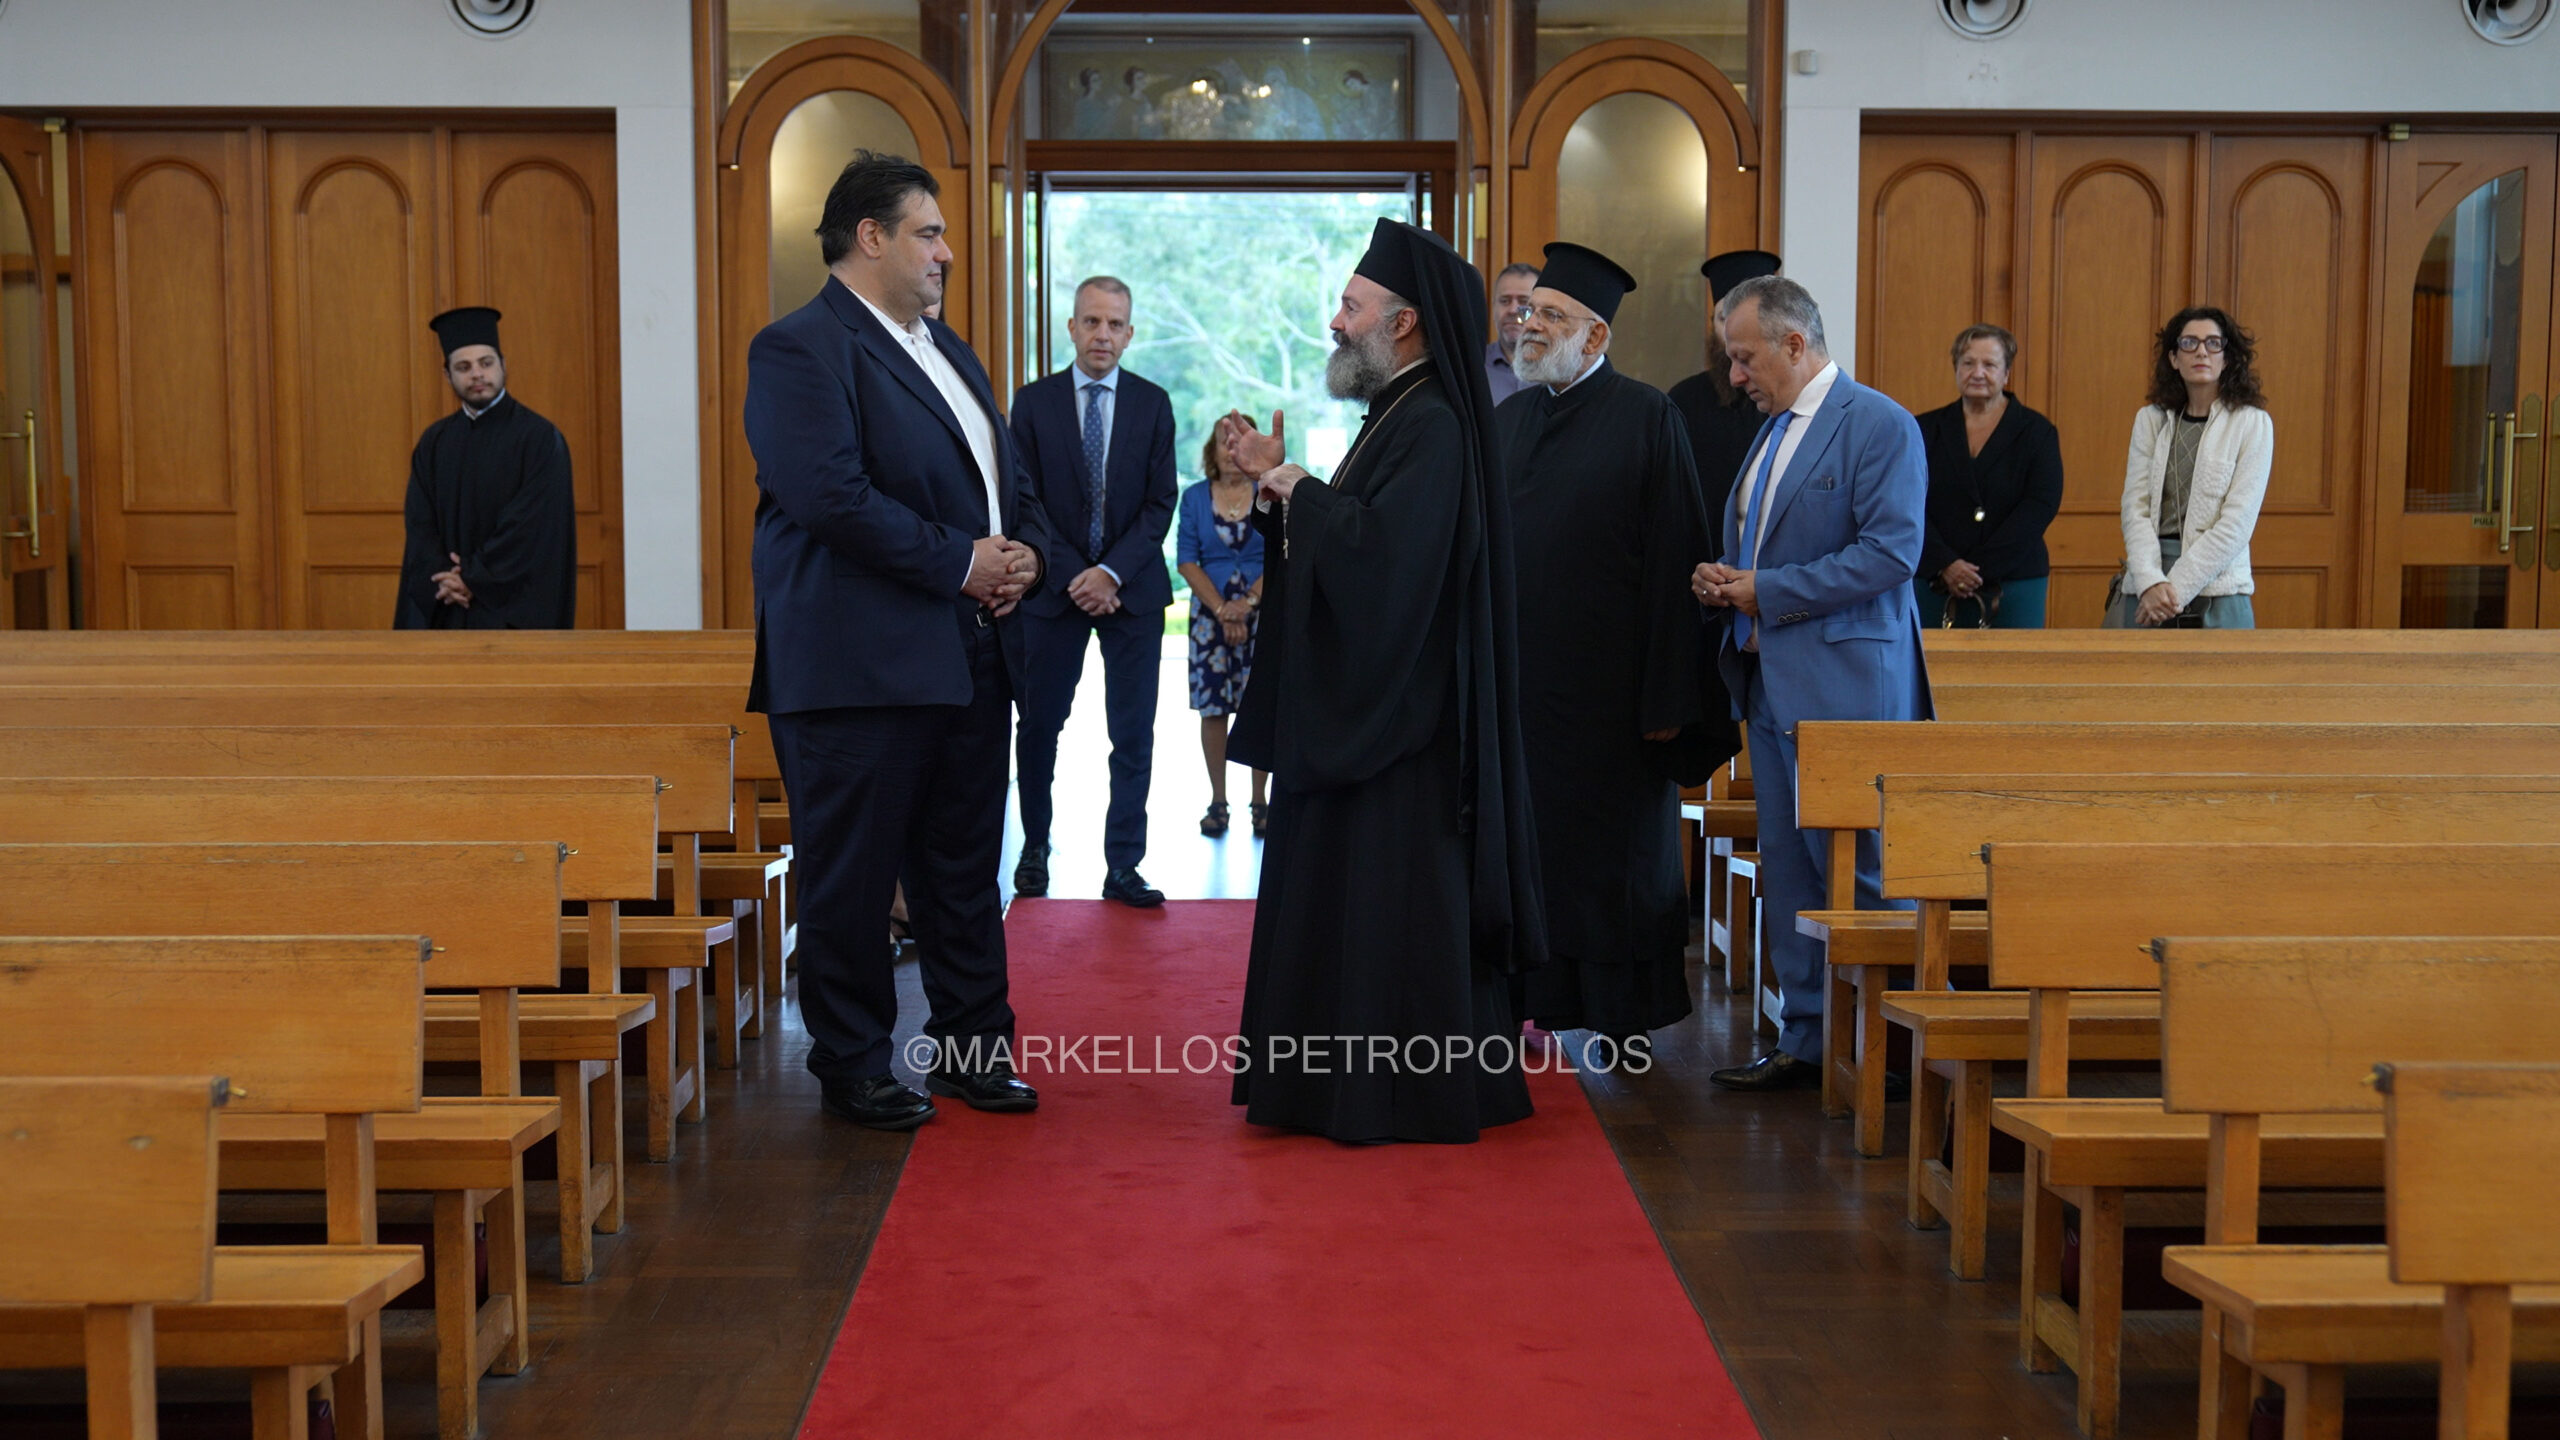 Ο Αρχιεπίσκοπος Αυστραλίας υποδέχθηκε τον Έλληνα Υφυπουργό Εσωτερικών στην Ενορία του Αγίου Σπυρίδωνα στο Σίδνεϊ.